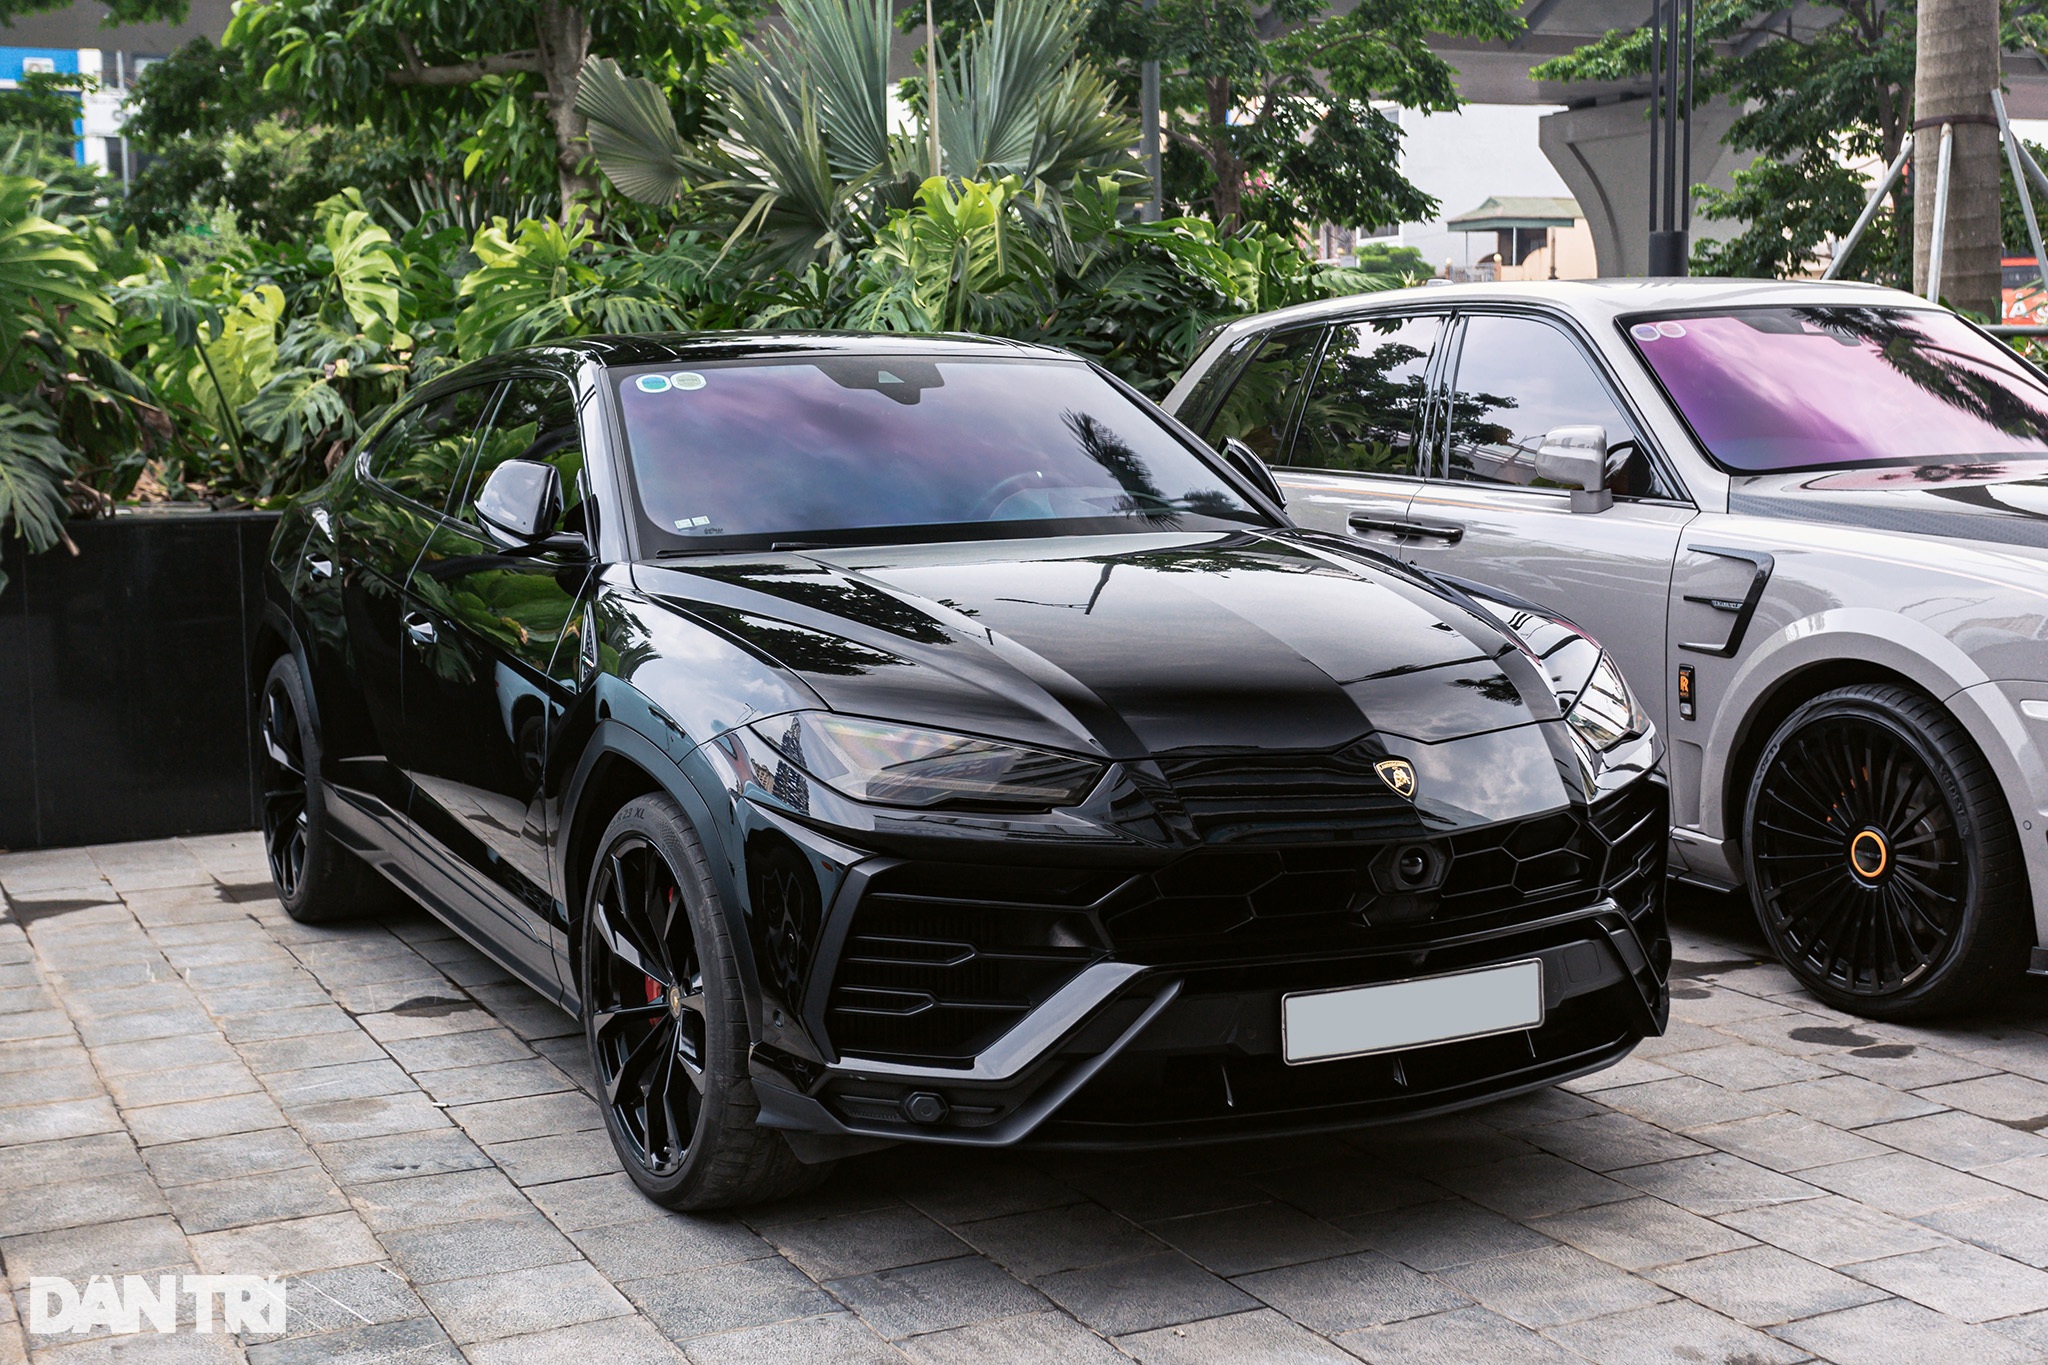 Siêu SUV Lamborghini Urus được đại gia Đỗ Bình Dương mua từ năm 2020, nhập khẩu bởi đơn vị kinh doanh xe tư nhân. Ở thời điểm mua mới, chiếc xe có giá lăn bánh lên tới hơn 25 tỷ đồng. Ước tính, chỉ có hai chiếc Urus thế hệ này tại Việt Nam mang màu sơn đen ở ngoại thất (Ảnh: Thái Dương).